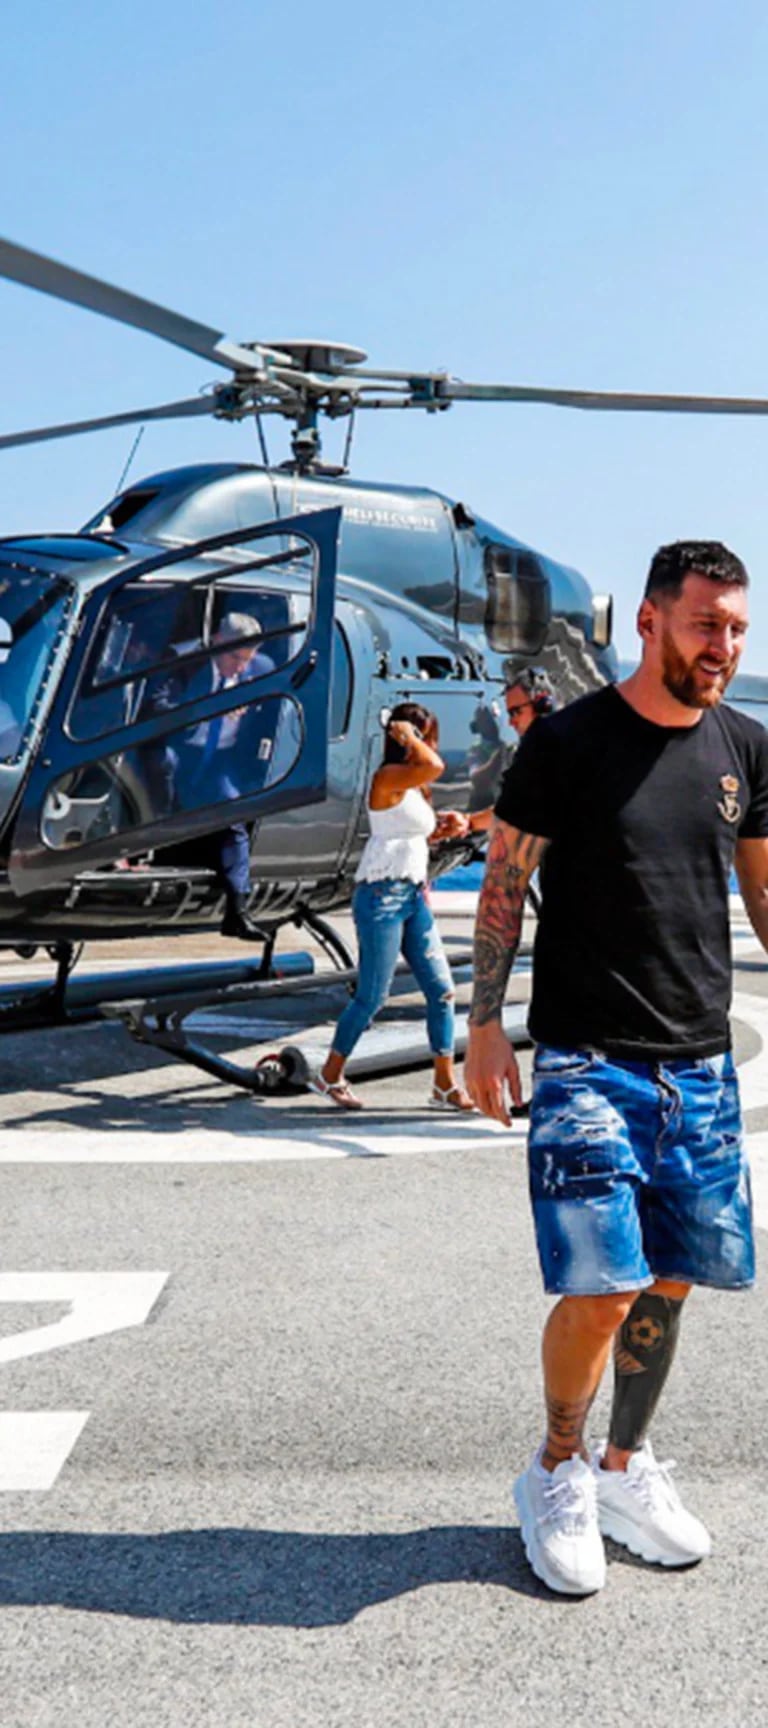 Arribo en helicóptero con Antonela, distendida charla con Cristiano Ronaldo  y nuevo premio: así fue la "excursión" de Messi por Mónaco - Infobae